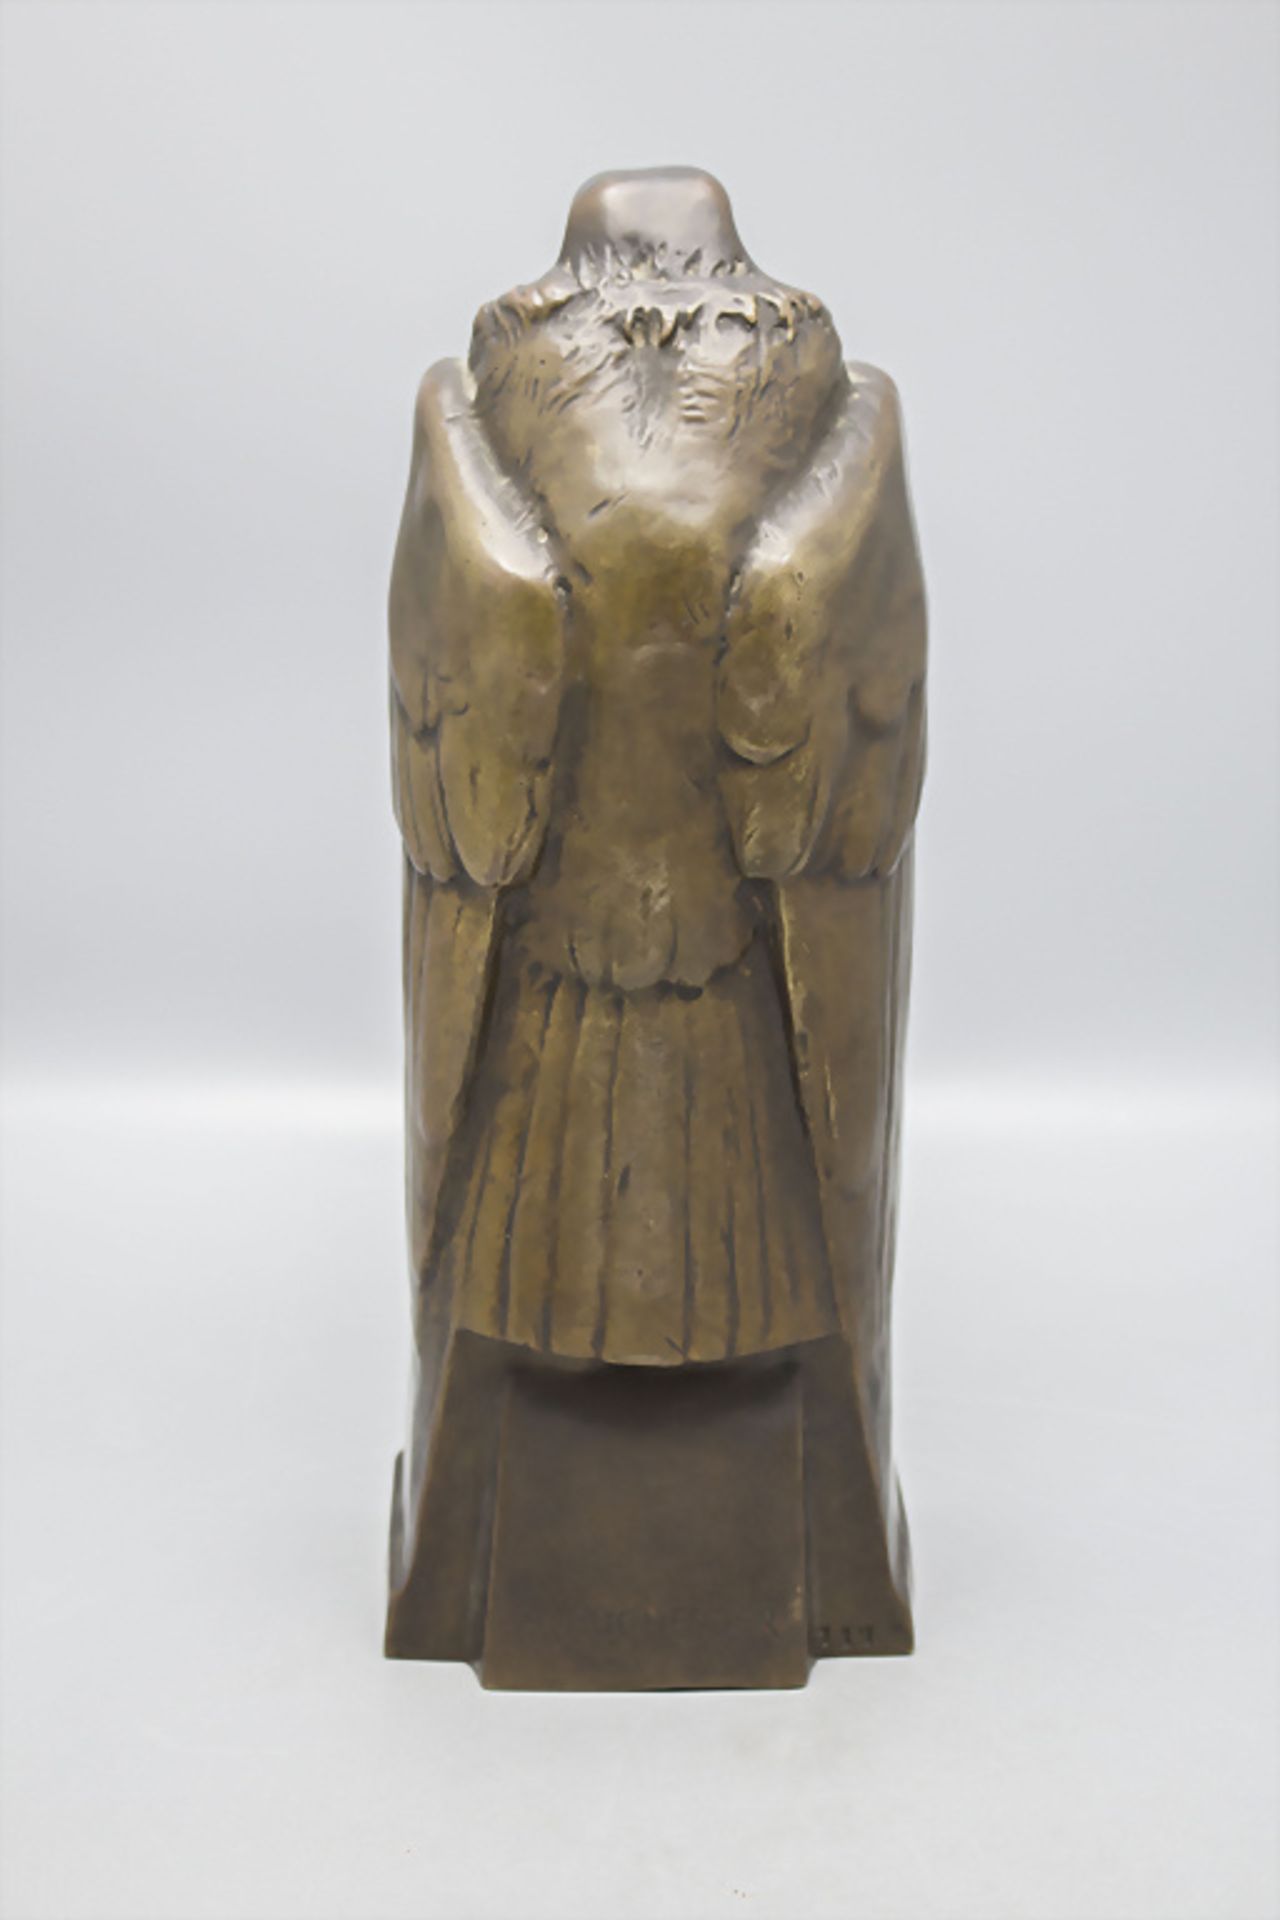 Jugendstil Bronze 'Adler mit Barometer' / An Art Nouveau bronze barometer with an eagle, Anton ... - Bild 4 aus 8